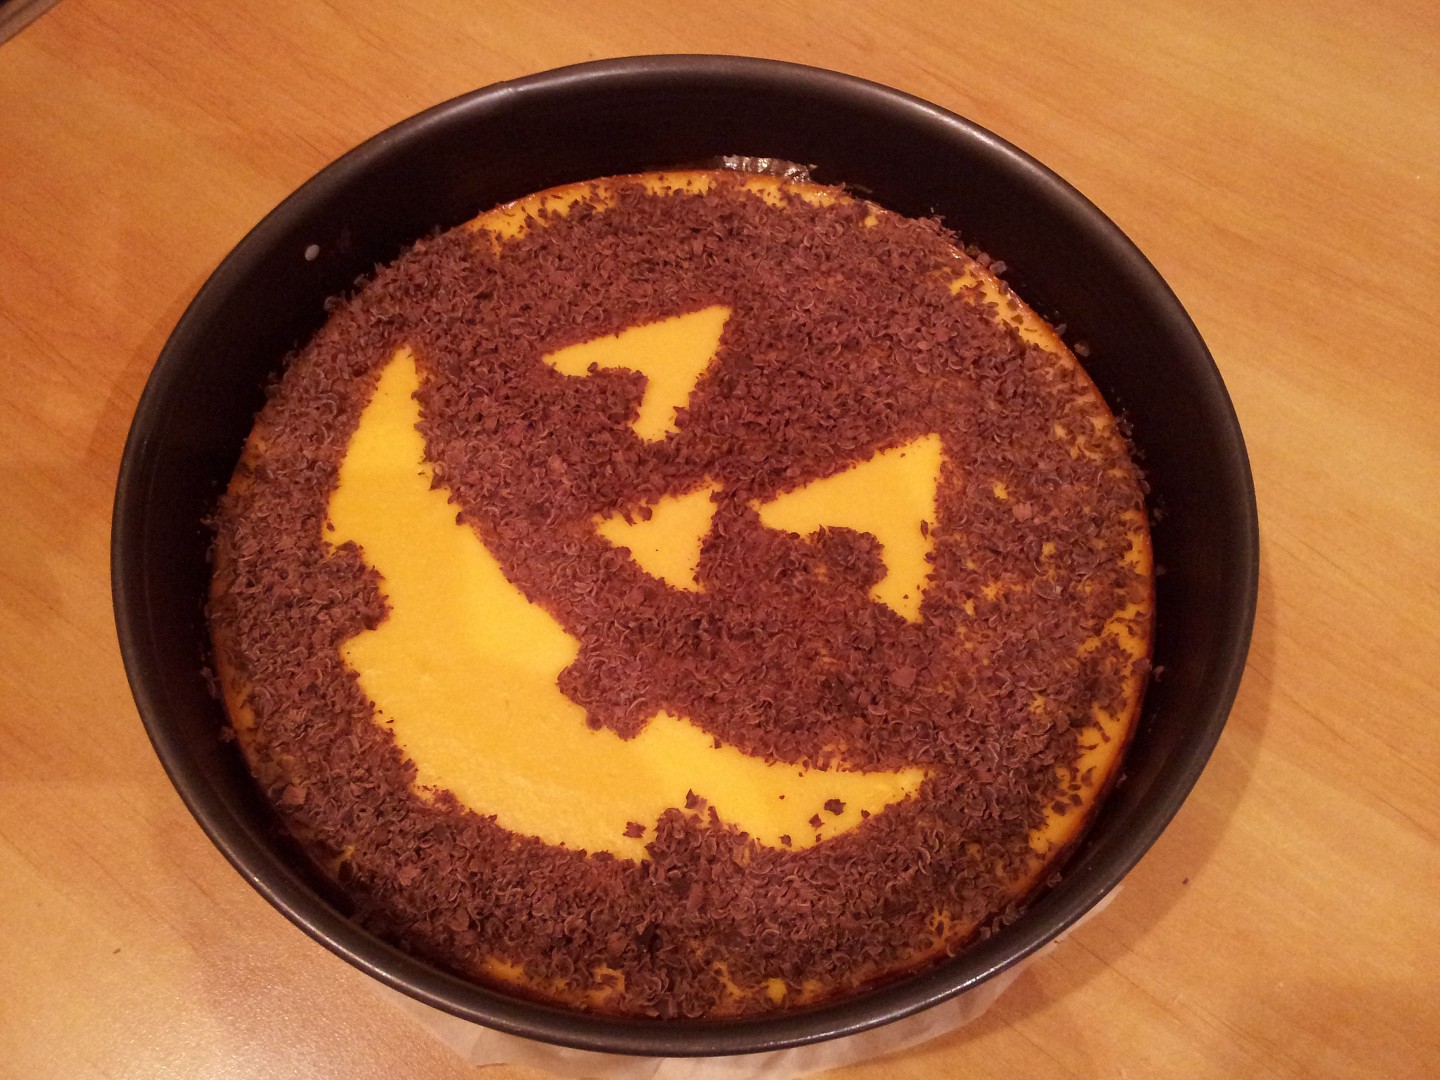 Halloweenský dýňový koláč